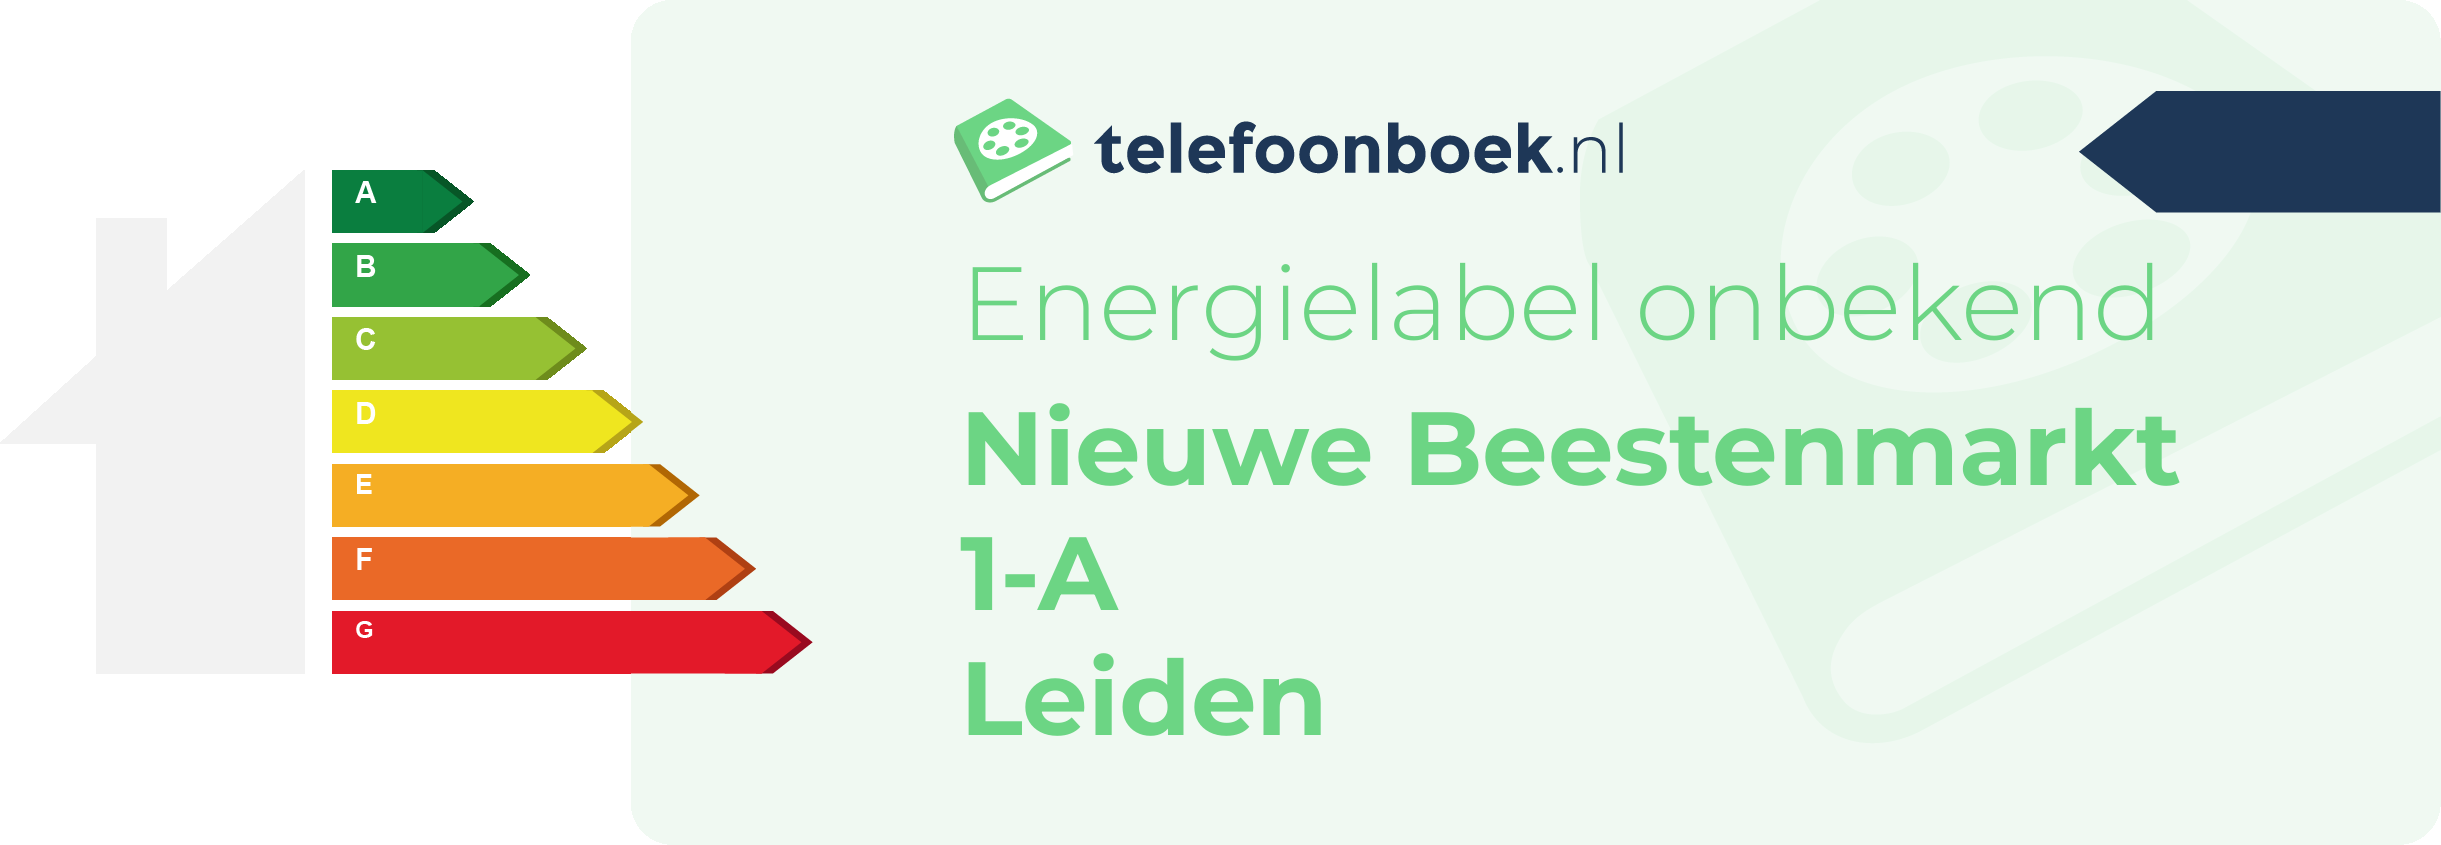 Energielabel Nieuwe Beestenmarkt 1-A Leiden